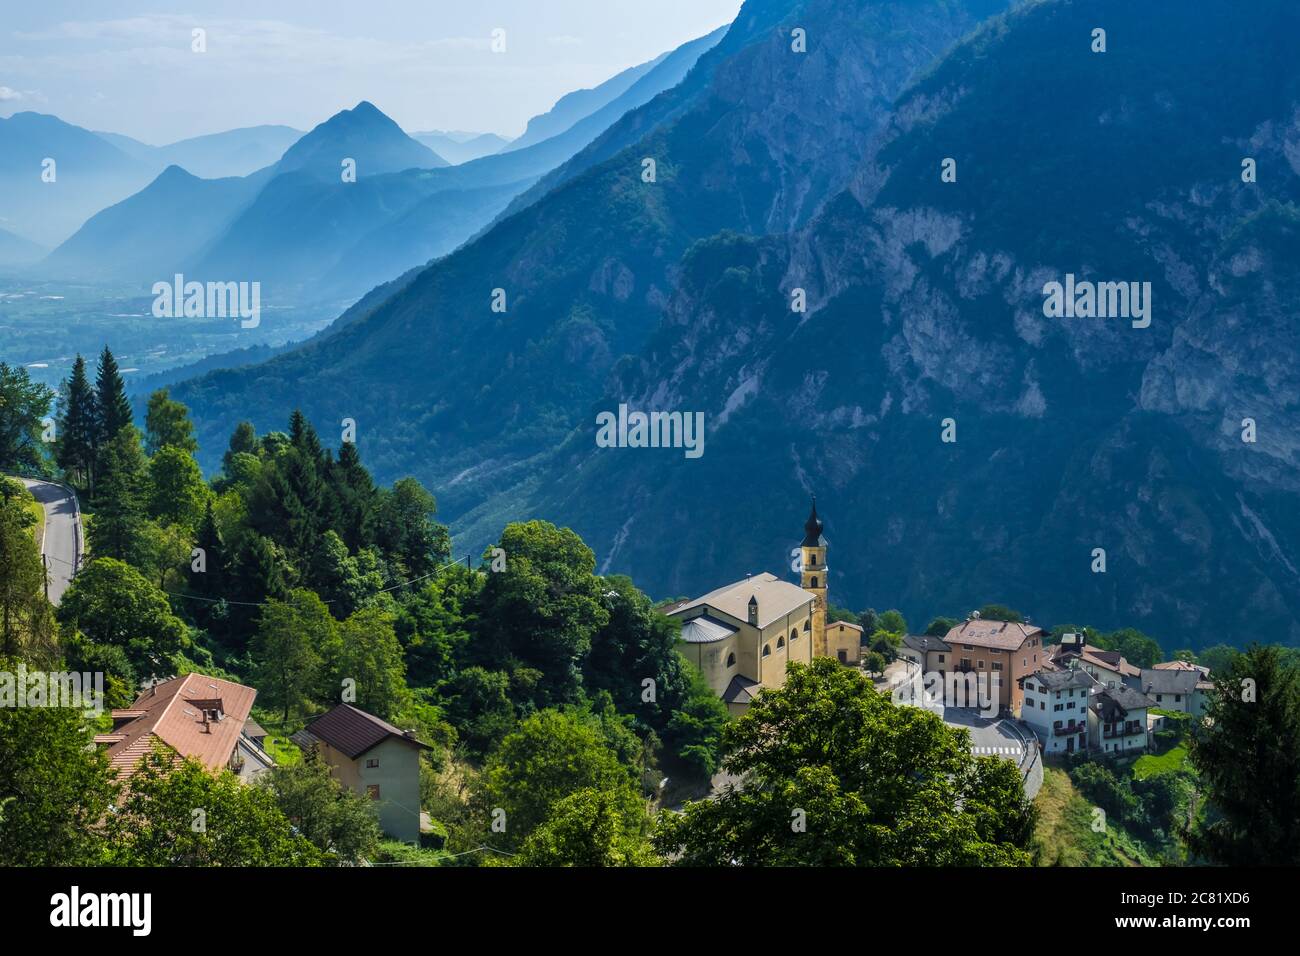 Pergine Valsugana, Italia - 12 de agosto de 2019: Pueblo bajo la cordillera y pequeño pueblo en el valle de los Alpes italianos, Trentino Alto Adige, Provincia de Trento Foto de stock